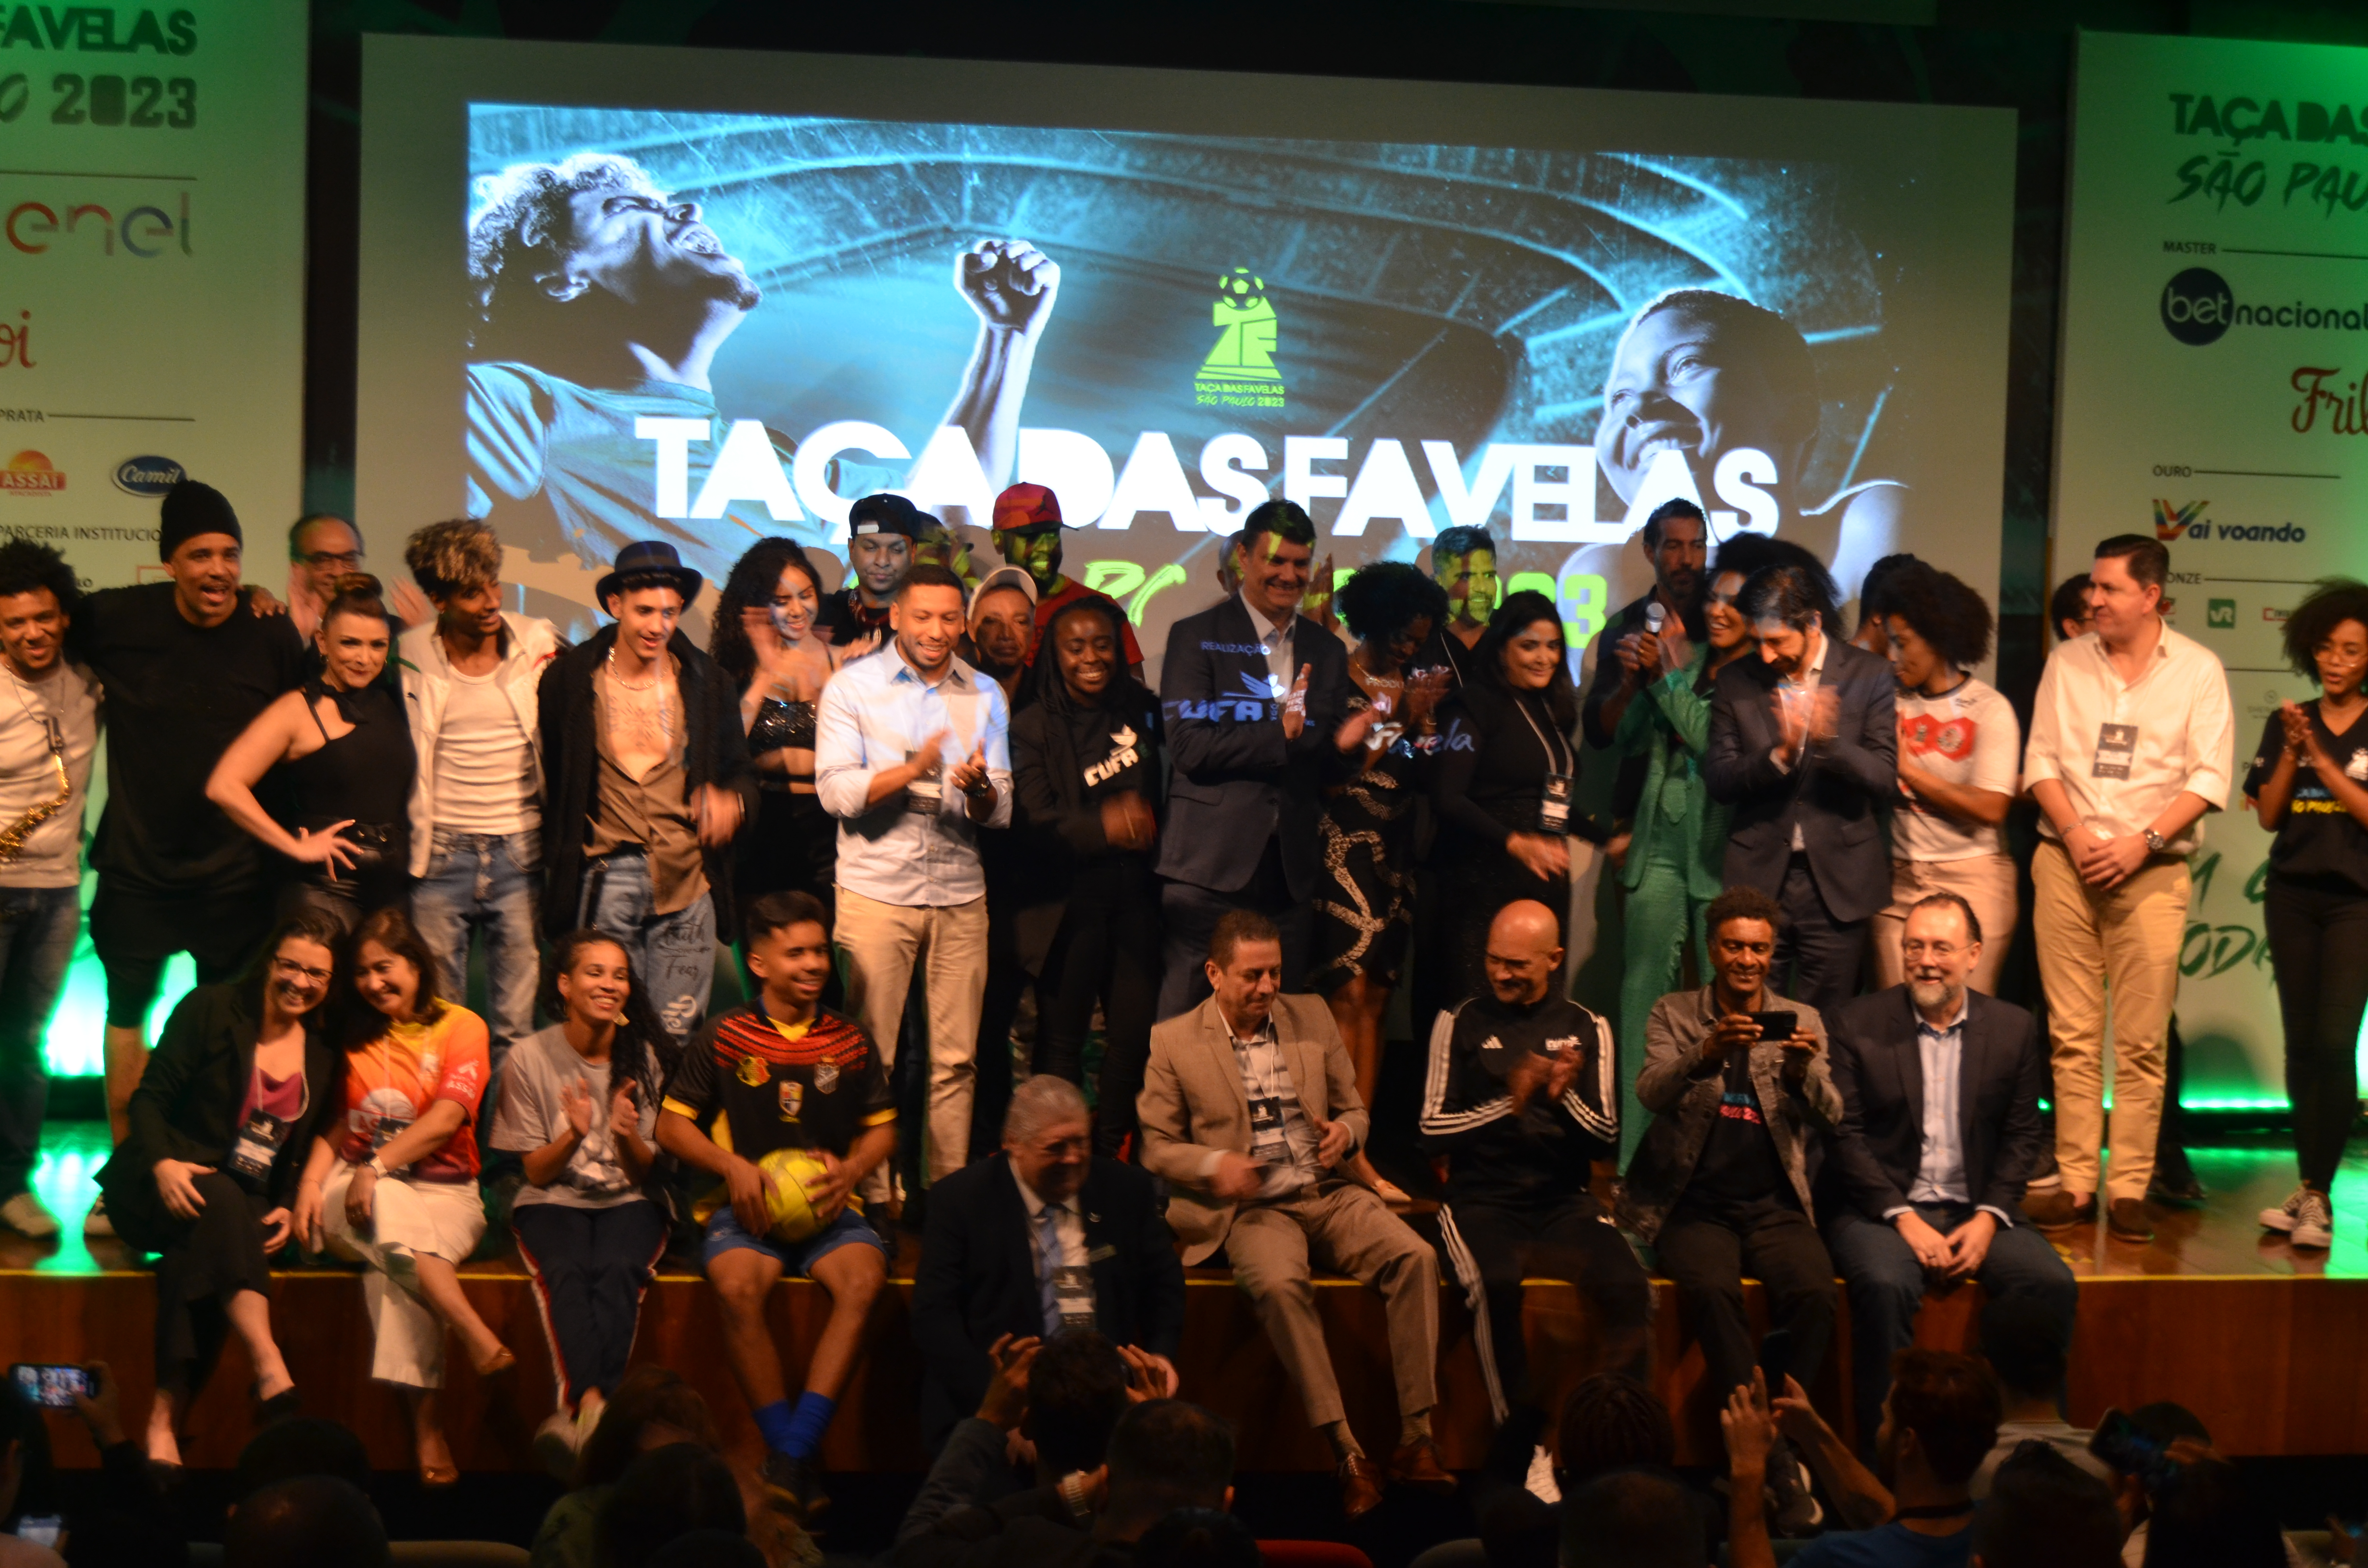 Na Imagem, Autoridades, Organizadores e Participantes da abertura da Taça das favelas